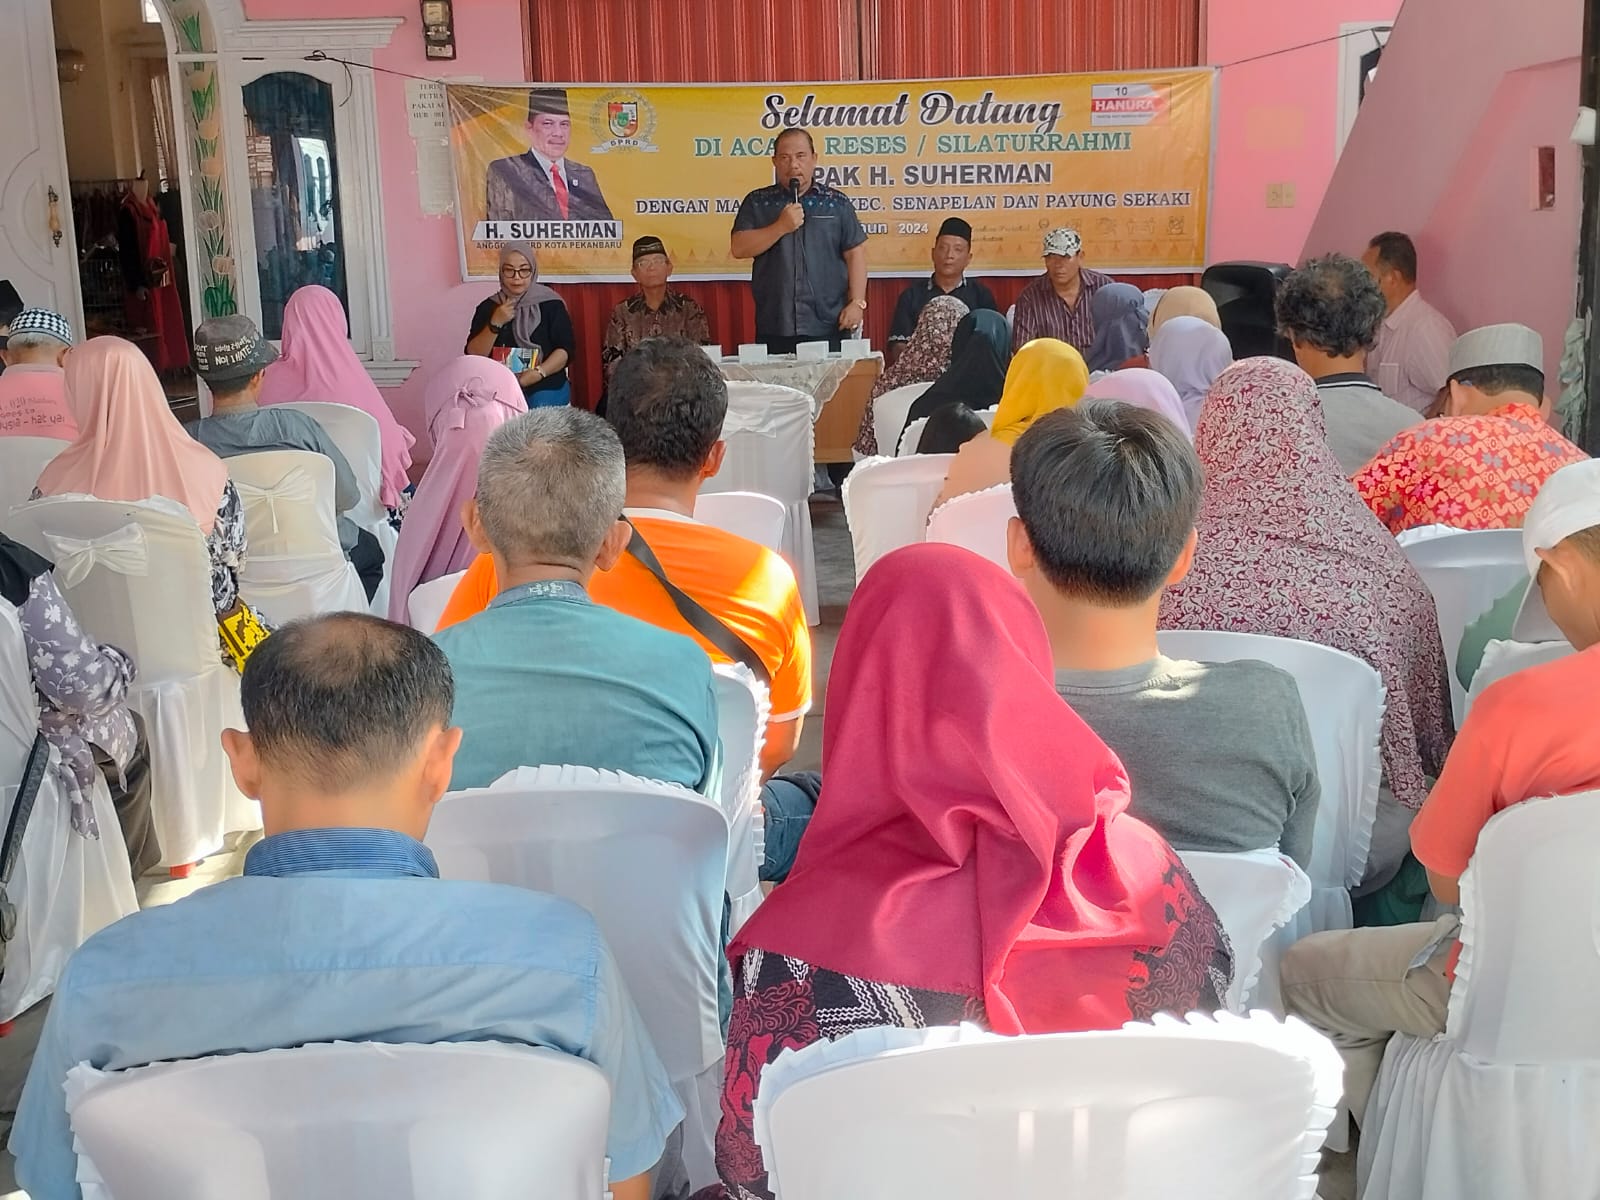 Anggota DPRD Kota Pekanbaru H Suherman saat melaksanakan Penyebarluasan Perda